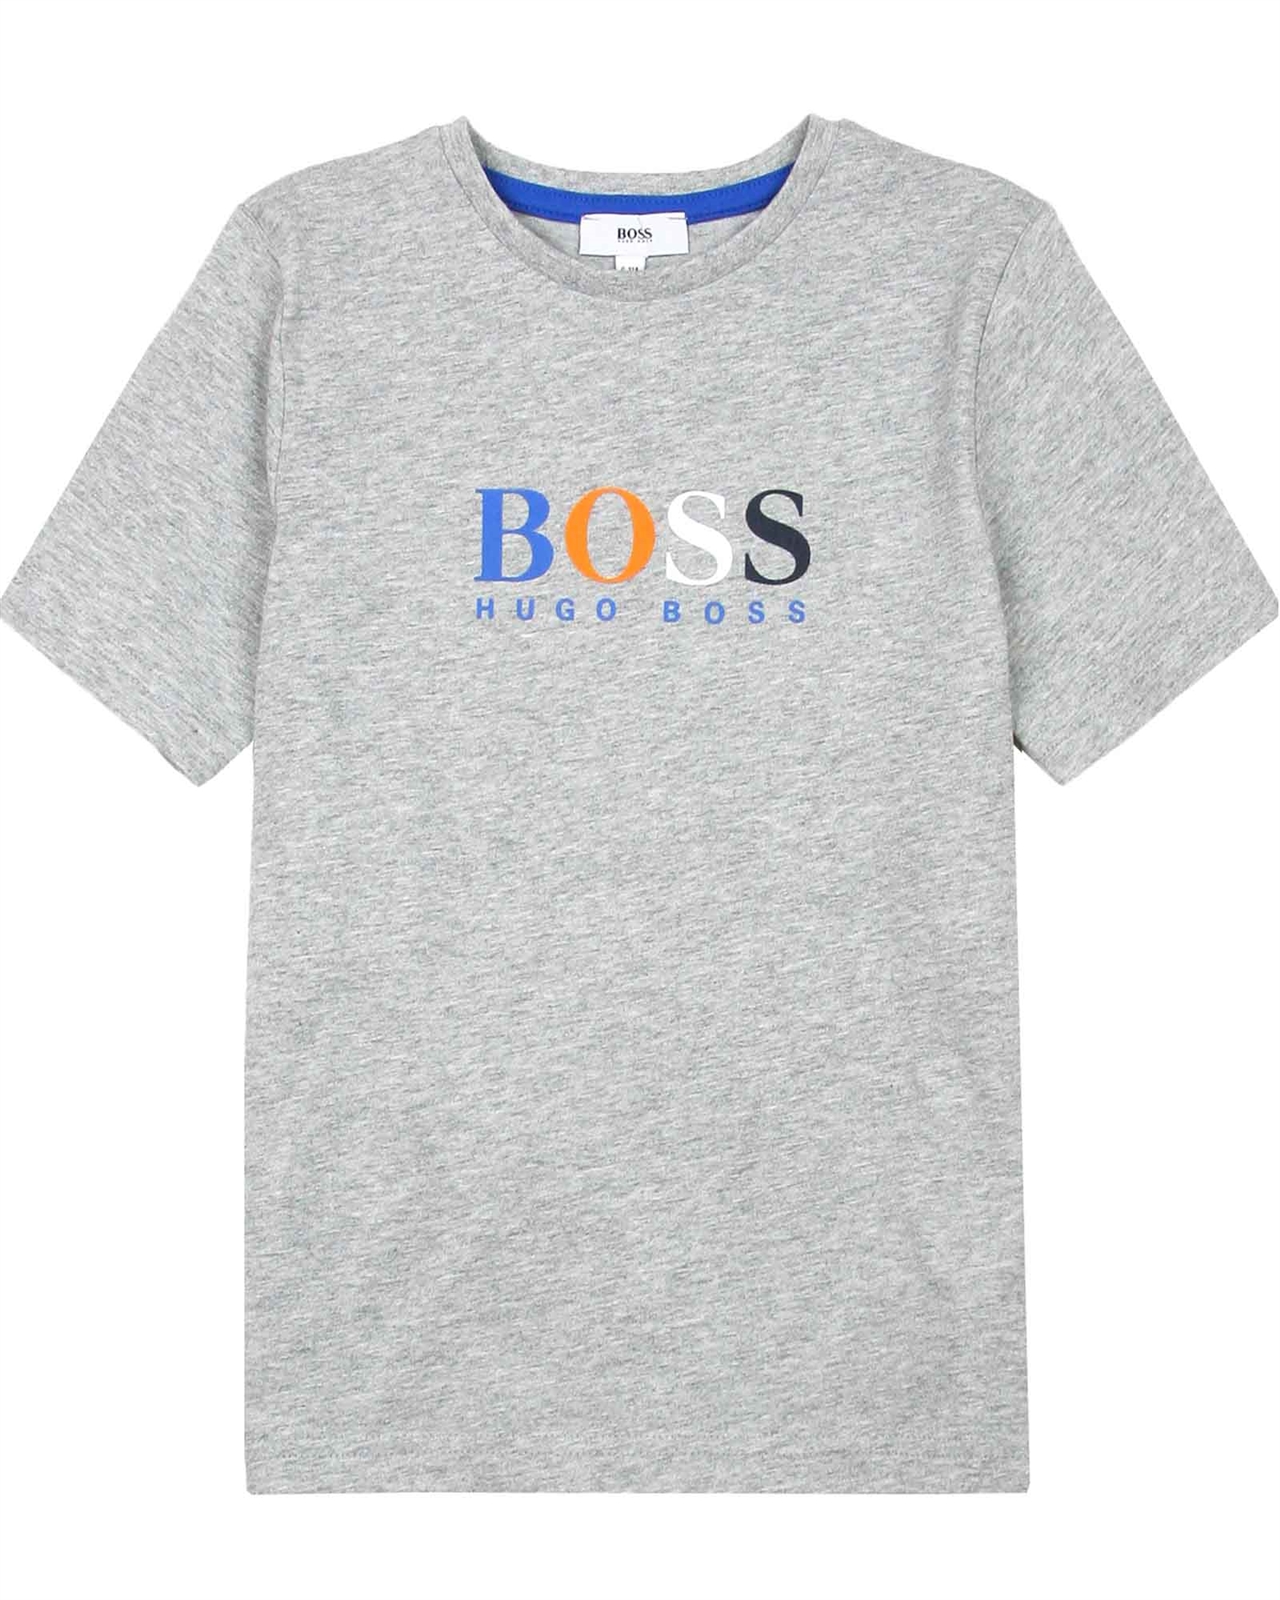 BOSS Boys Logo T-shirt in Grey - BOSS - BOSS Boys Clothes Spring/Summer ...